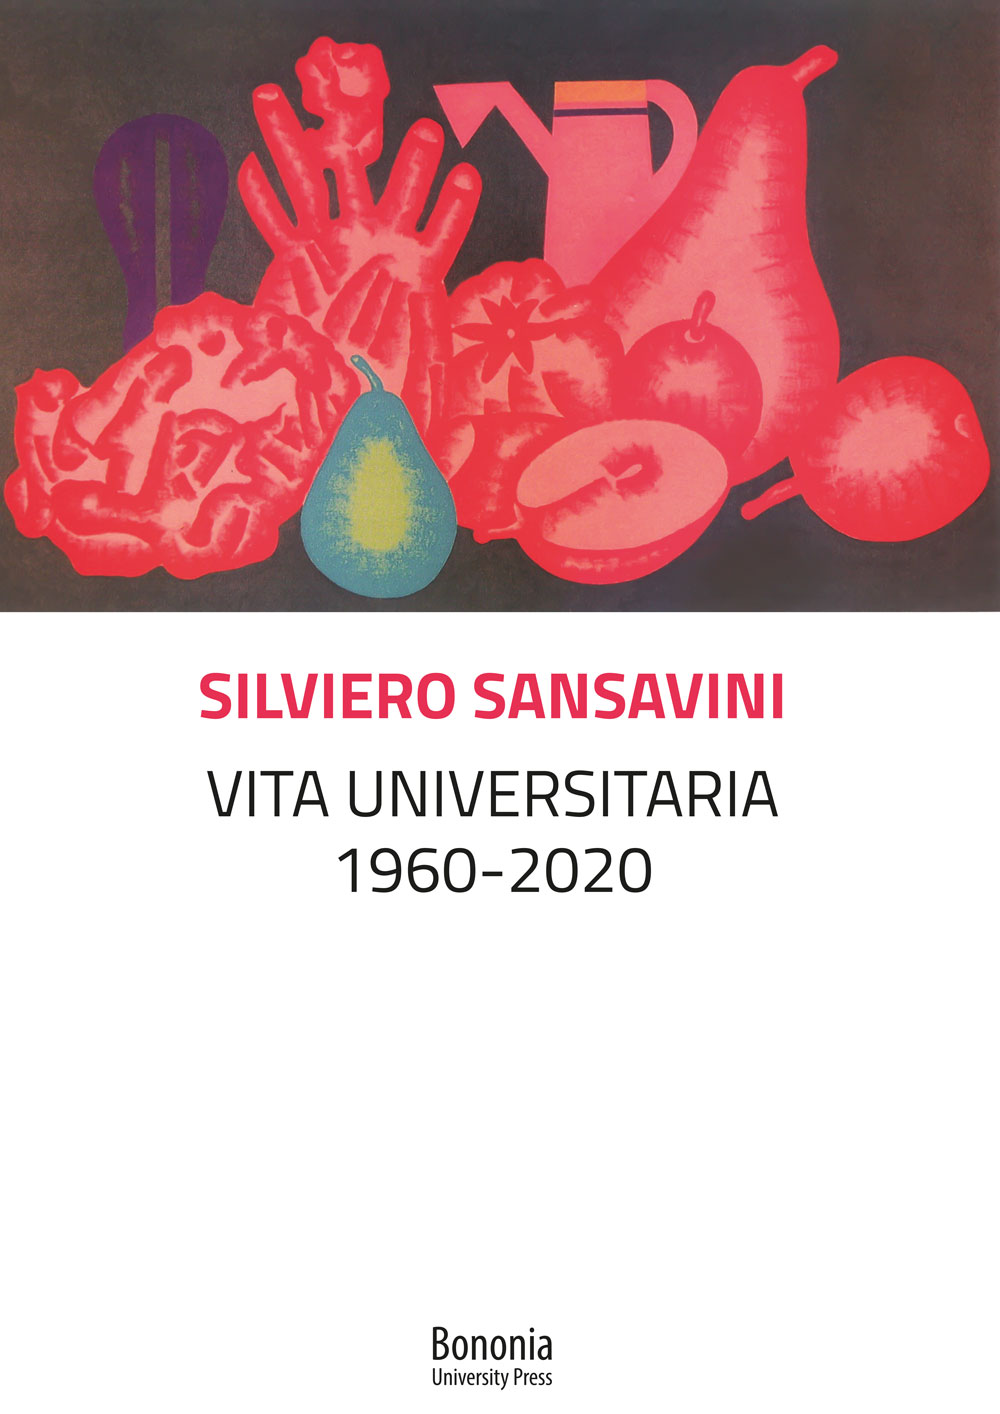 Vita universitaria - Bologna University Press